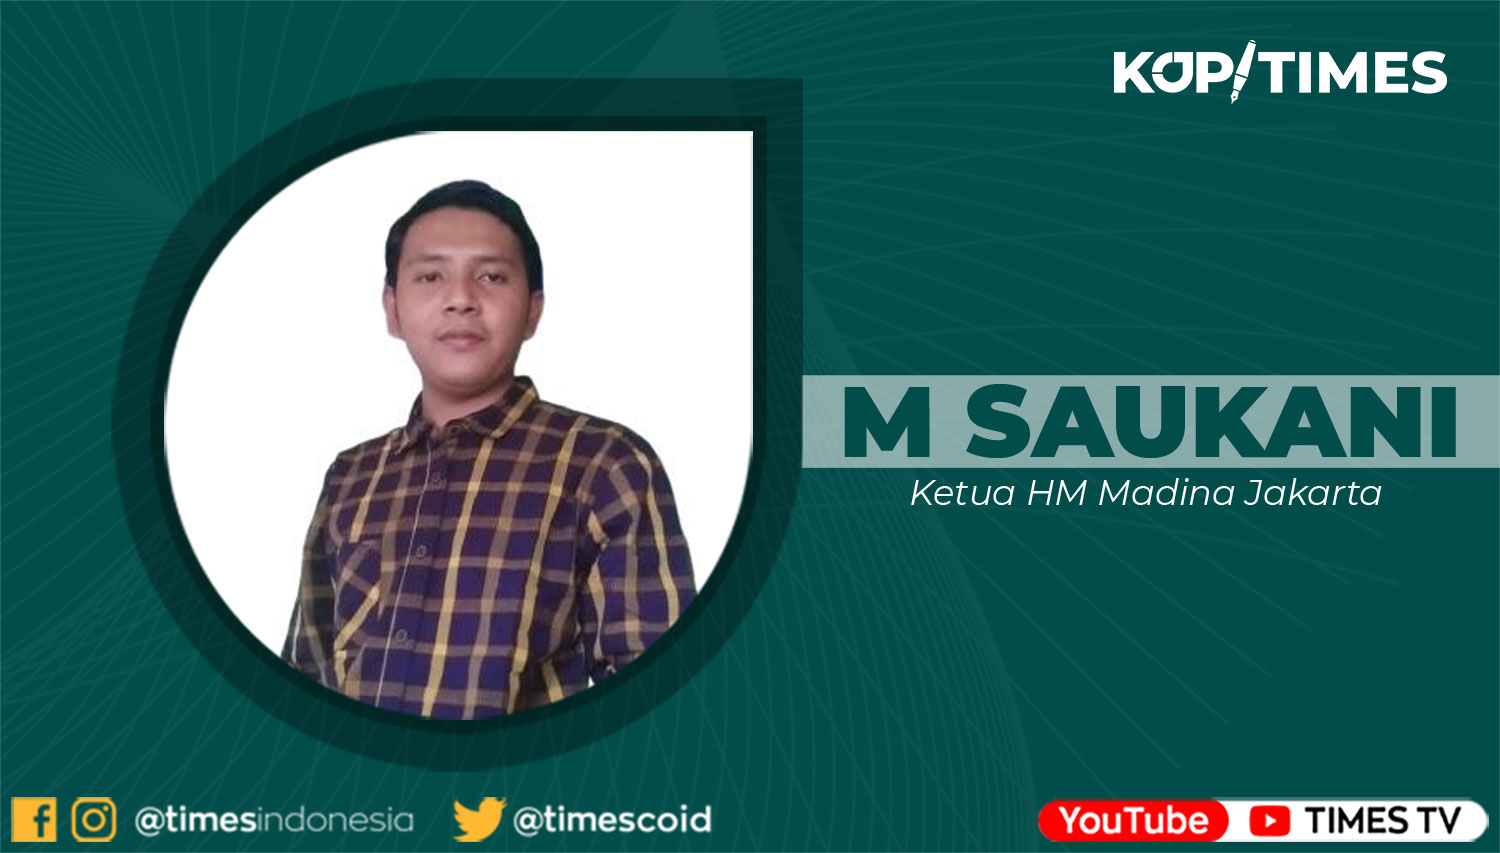 Muhammad Saukani, Mahasiswa Studi Tarjamah Universitas Islam Negeri Syarif Hidayatullah Jakarta. Ketua HM Madina Jakarta.